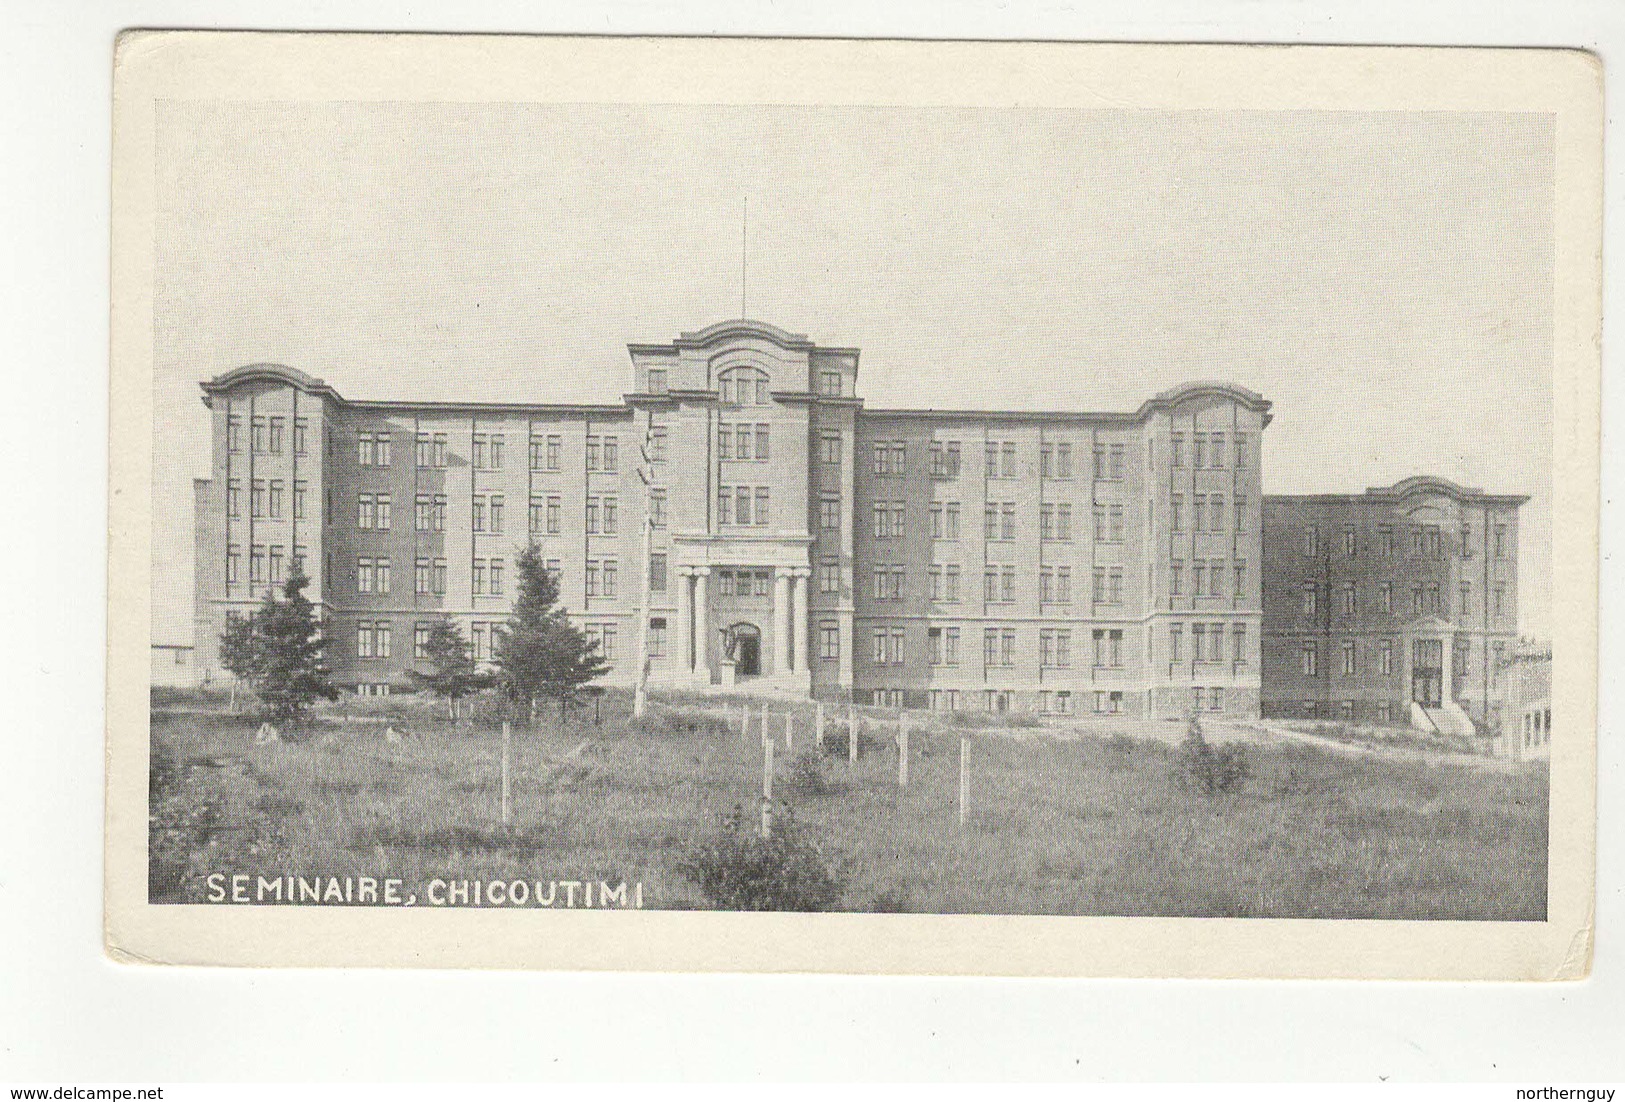 CHICOUTIMI, Quebec, Canada, Seminaire, Old WB Postcard - Chicoutimi